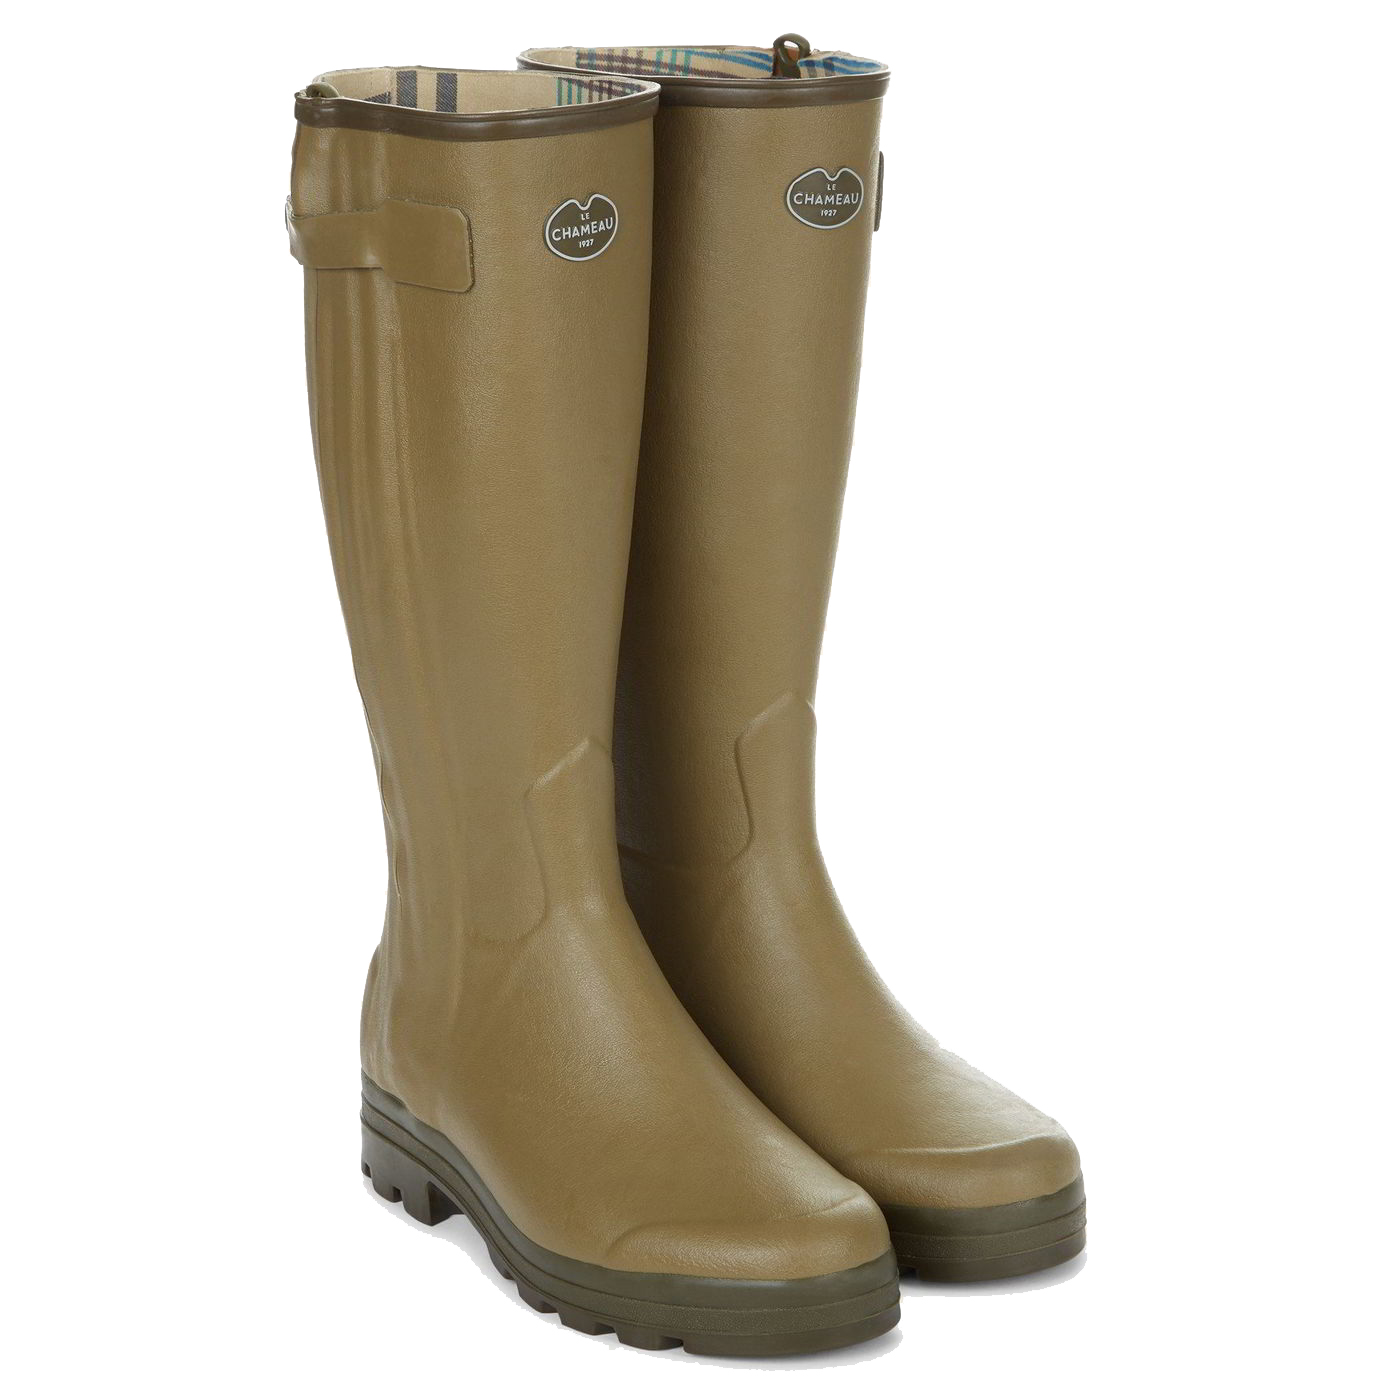 Le Chameau Mens Wellies Chasseur Jersey Zip Rain Boots - Vert Vierzon 2951